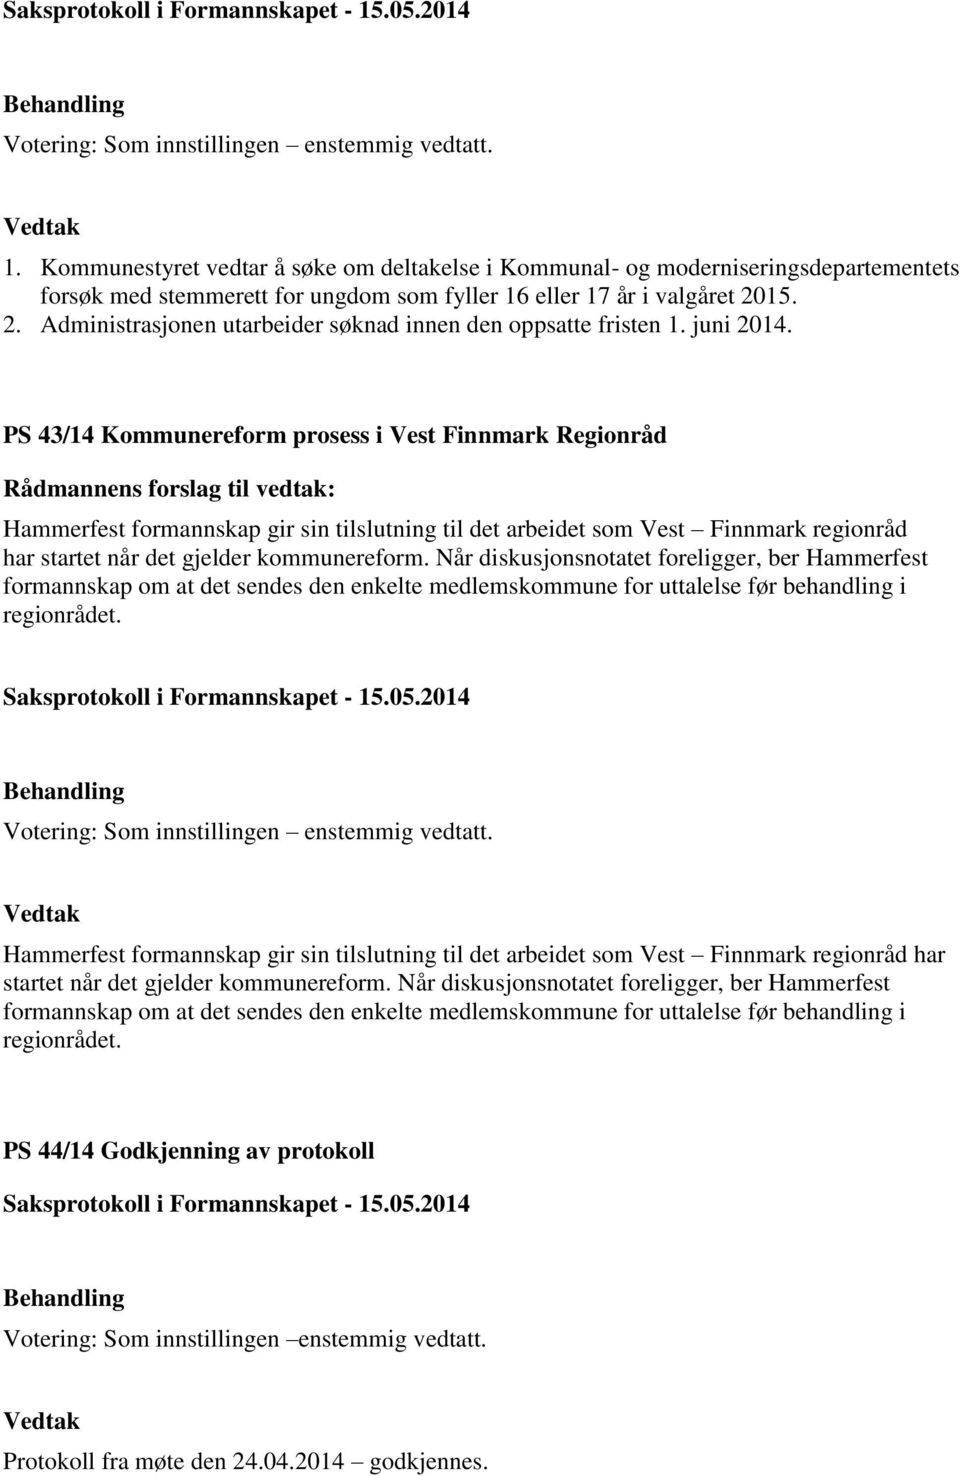 PS 43/14 Kommunereform prosess i Vest Finnmark Regionråd Hammerfest formannskap gir sin tilslutning til det arbeidet som Vest Finnmark regionråd har startet når det gjelder kommunereform.